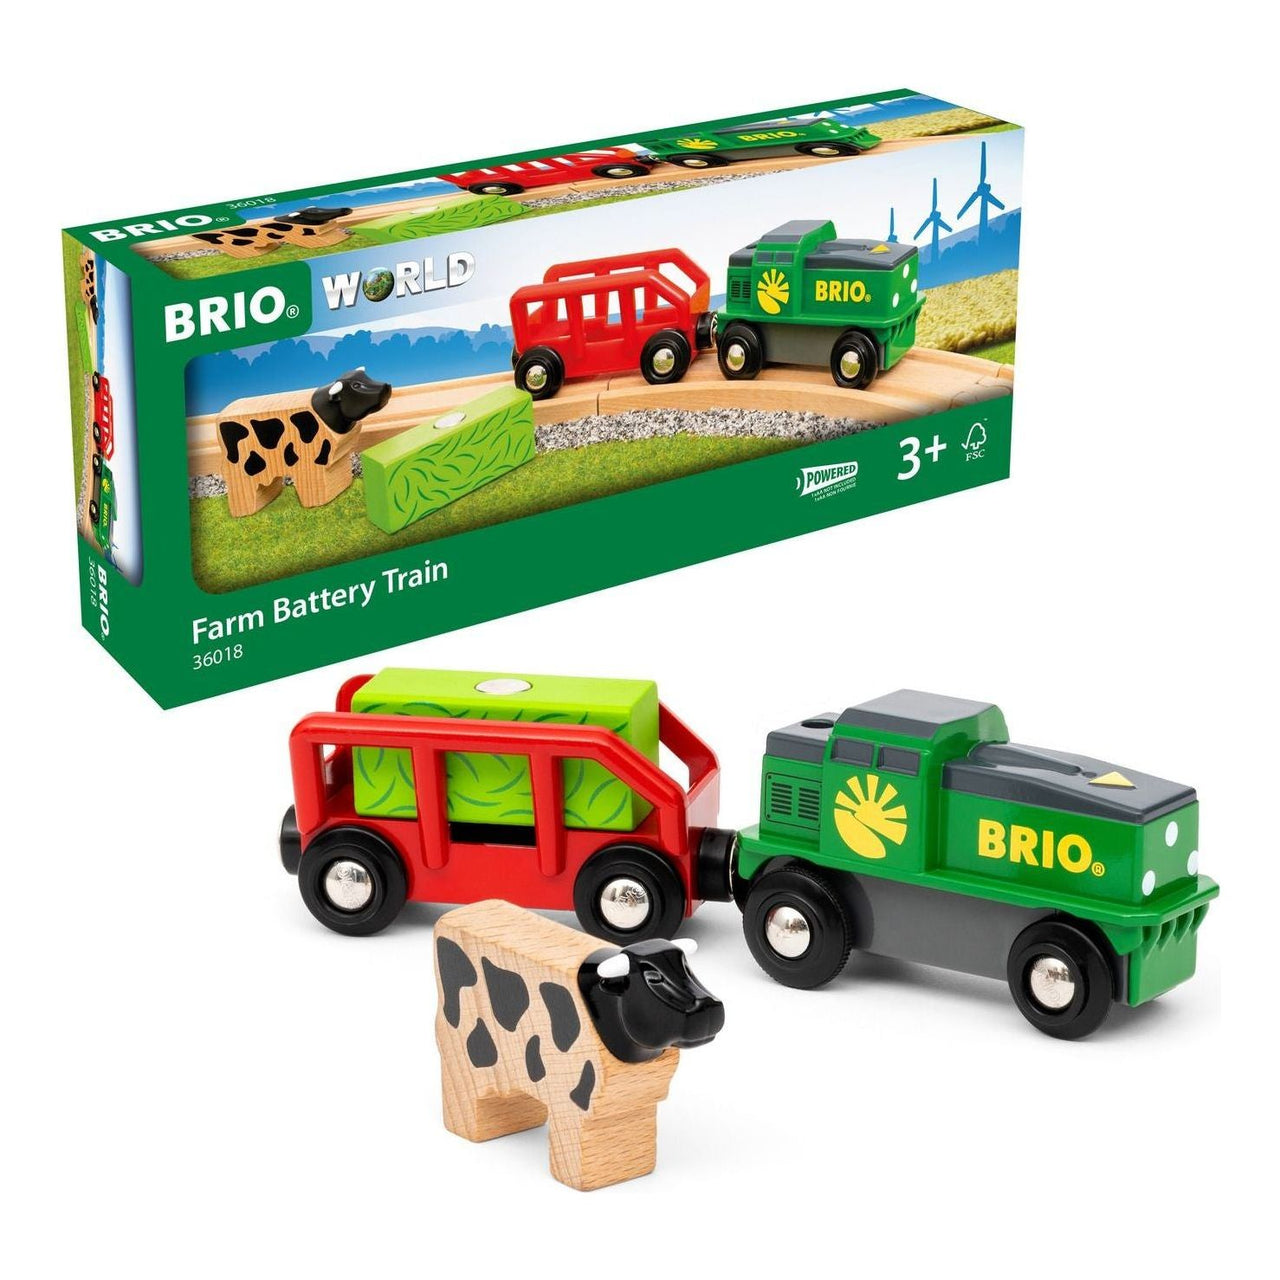 Brio Farm Battery Train BRIO